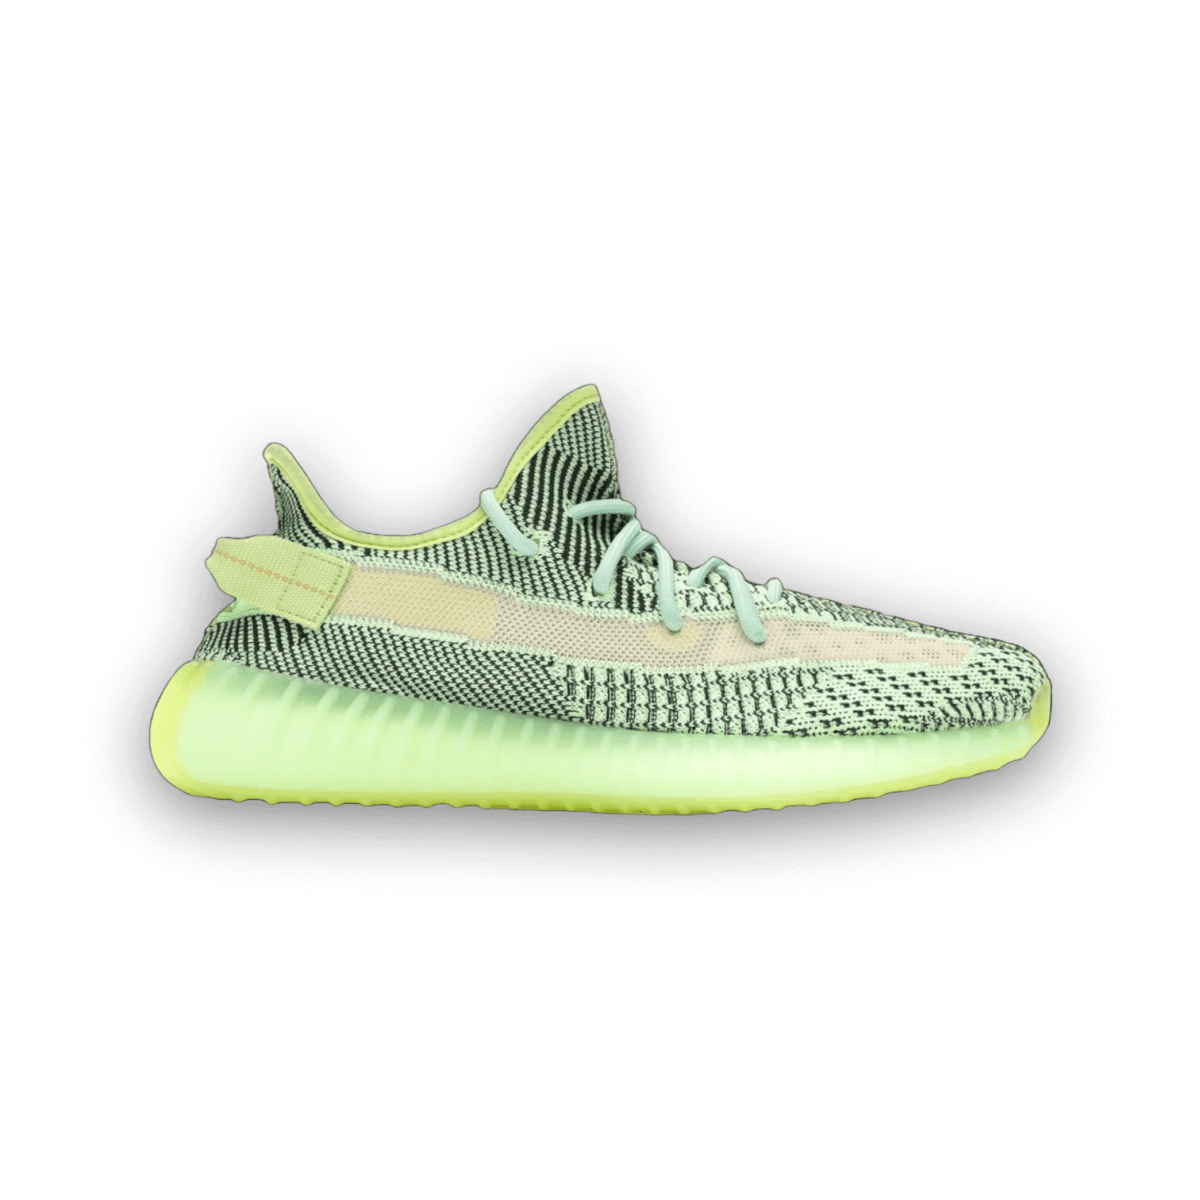 Yeezy Boost 350 V2 'Yeezreel Non-Reflective' - Low Sneaker - Jawns on Fire Sneakers & Streetwear